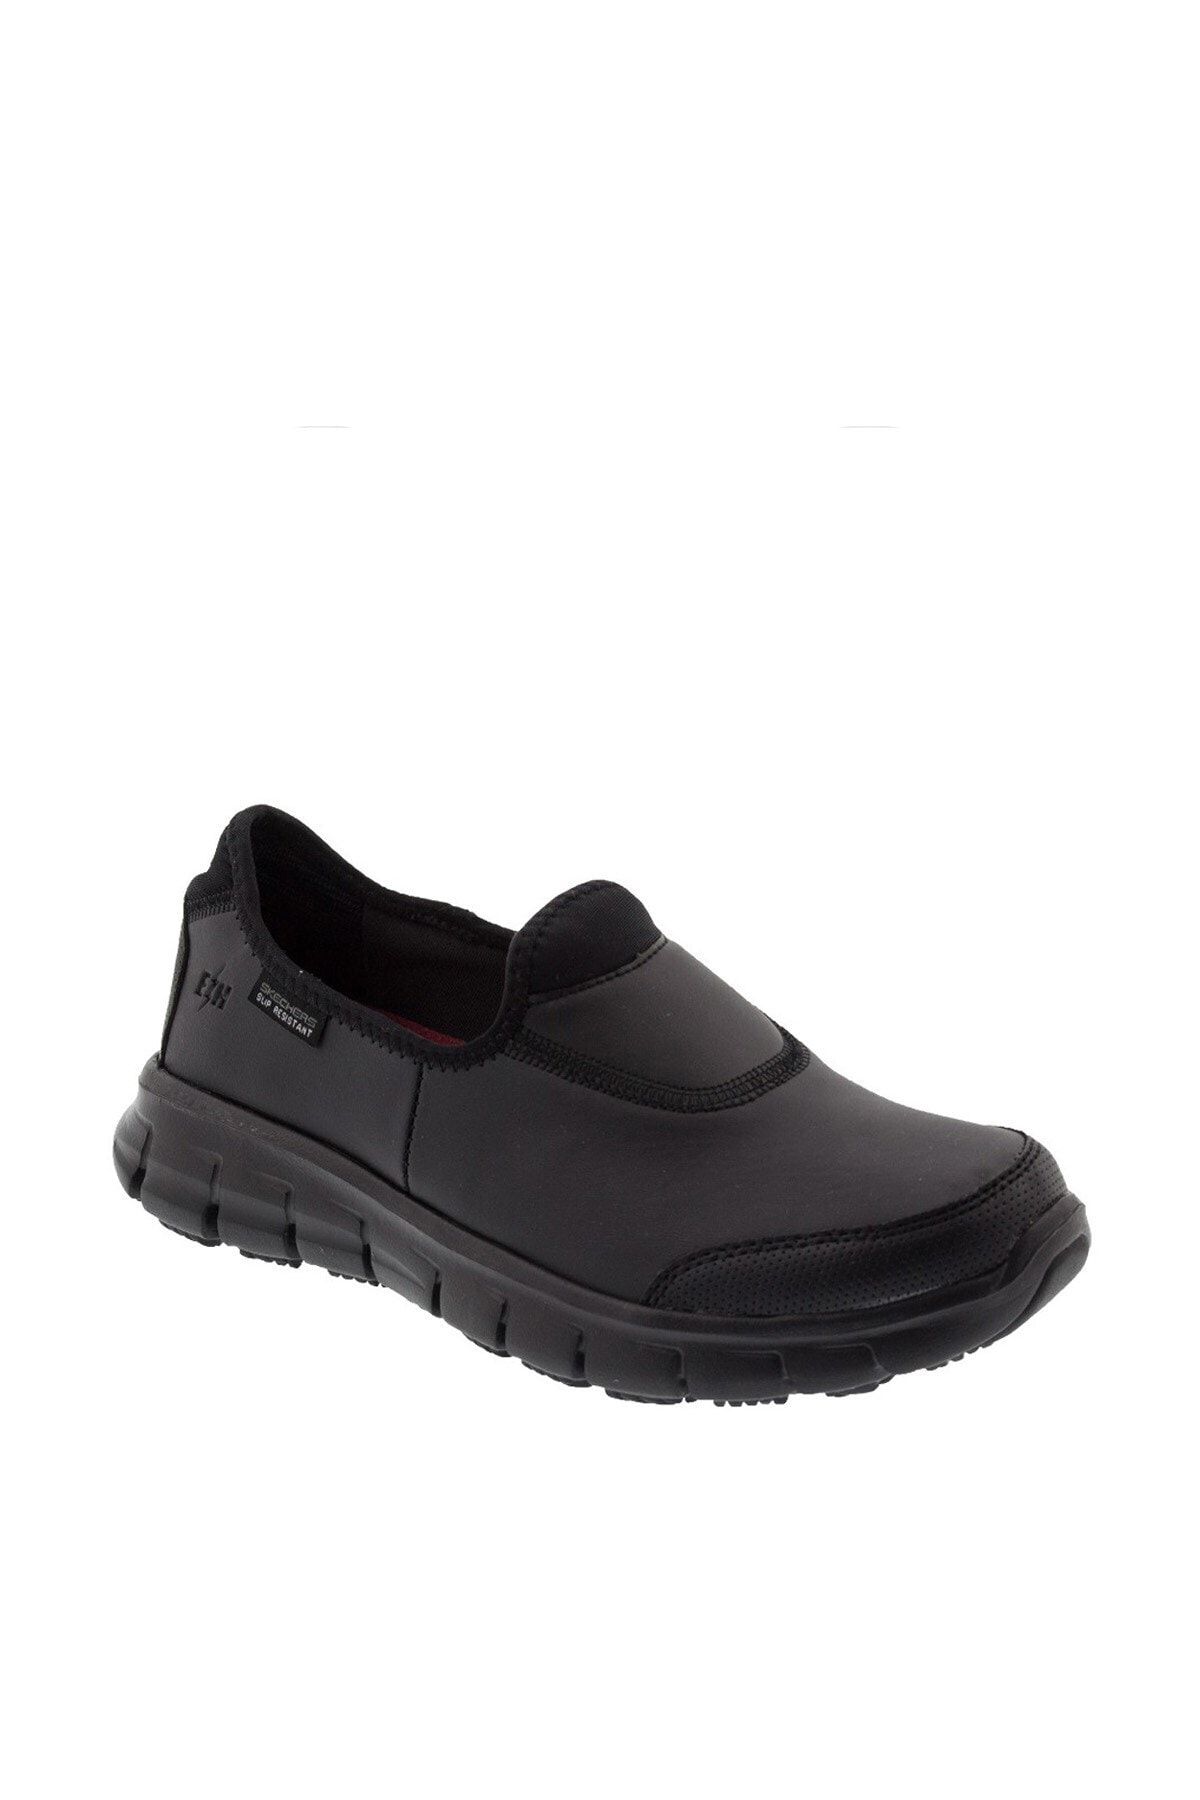 Skechers SURE TRACK Kadın Siyah Günlük Ayakkabı - 88888118 BBK